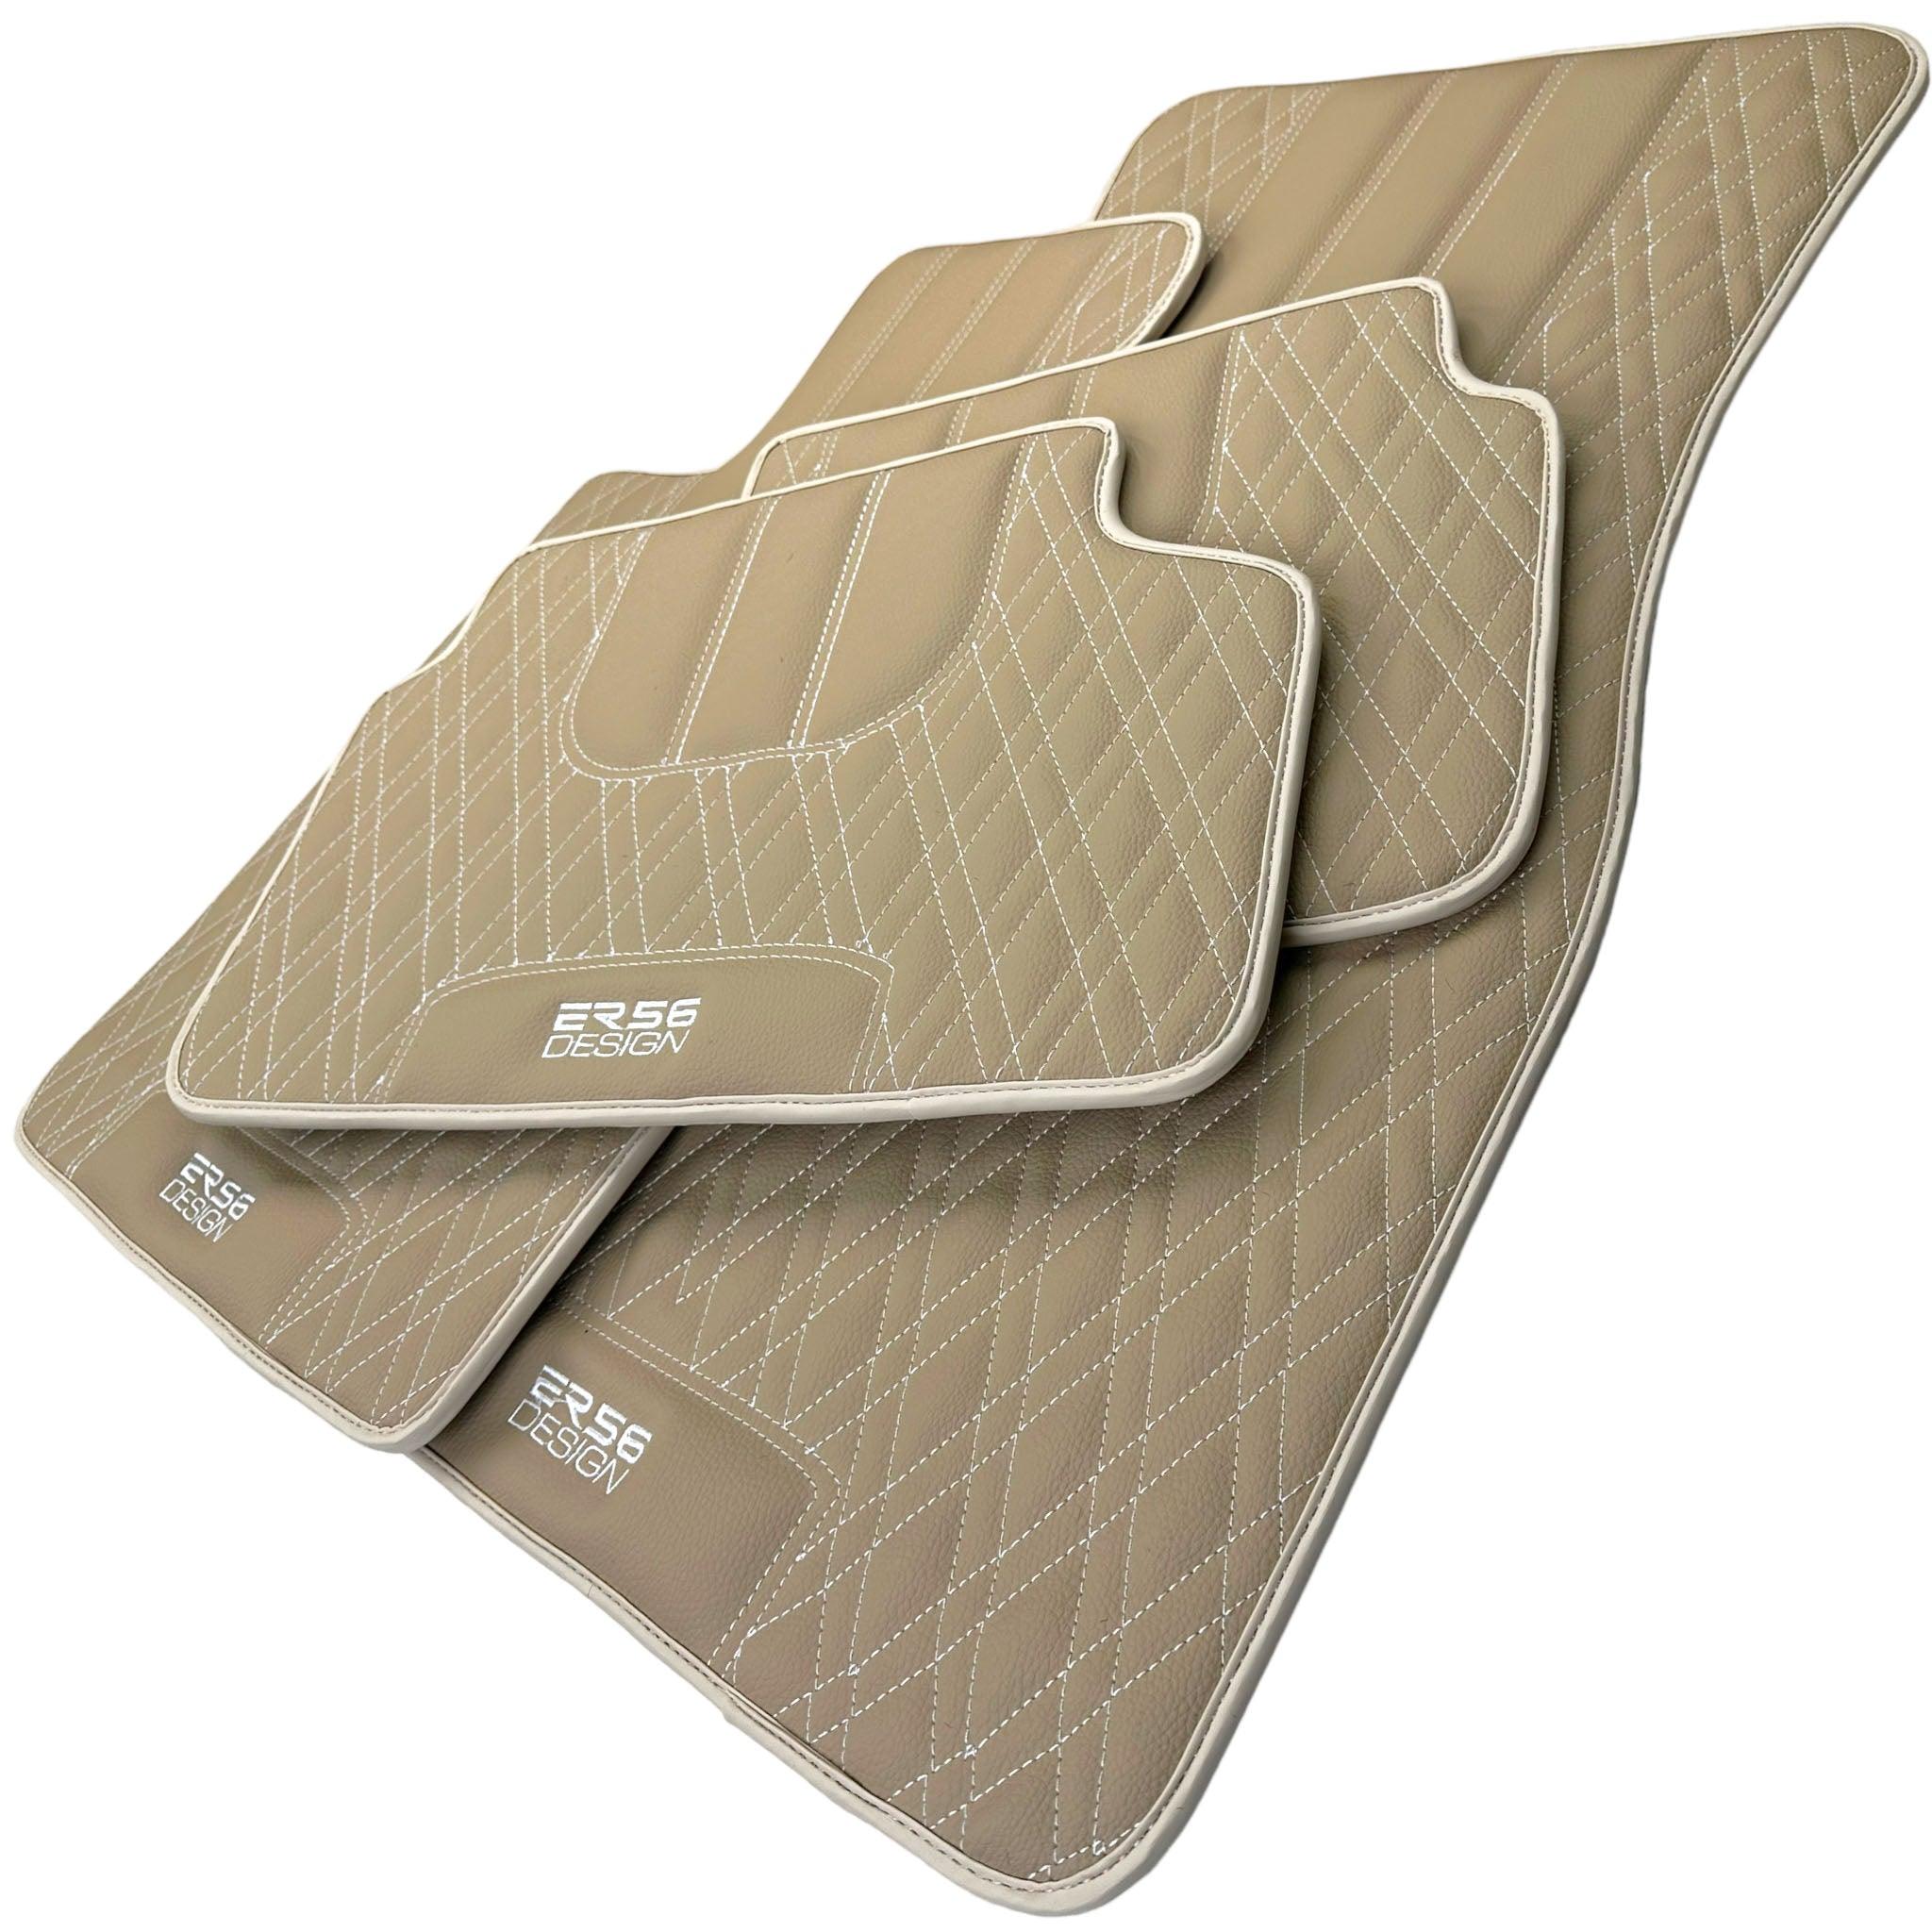 Beige Leather Floor Mats For BMW 8 Series G15 2-door Coupe